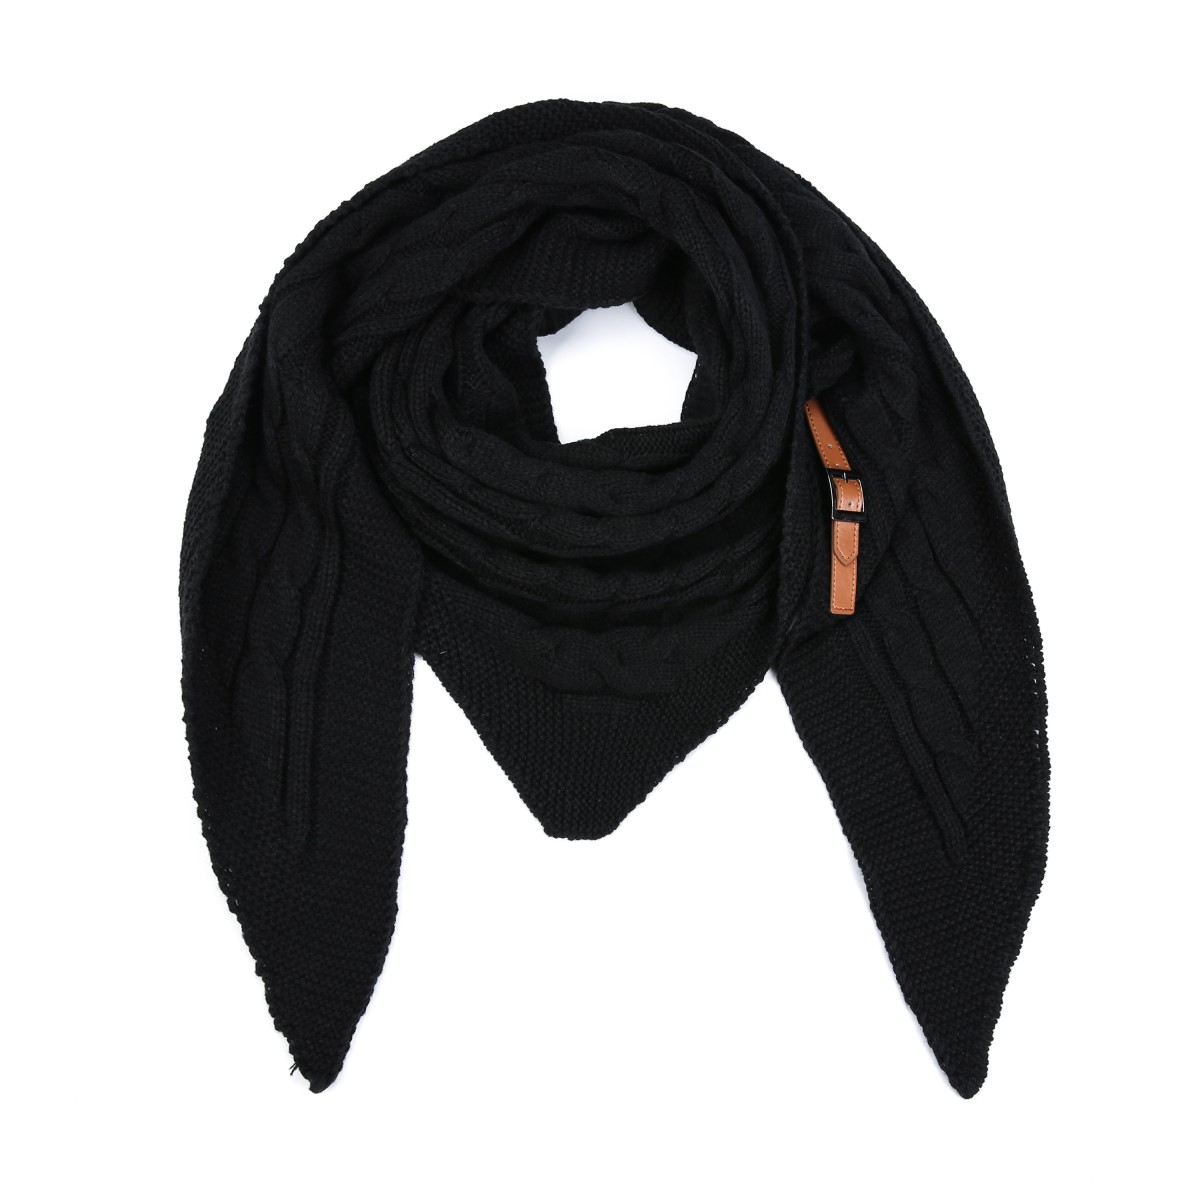 omslagdoeksjaal knitted riempje zwart